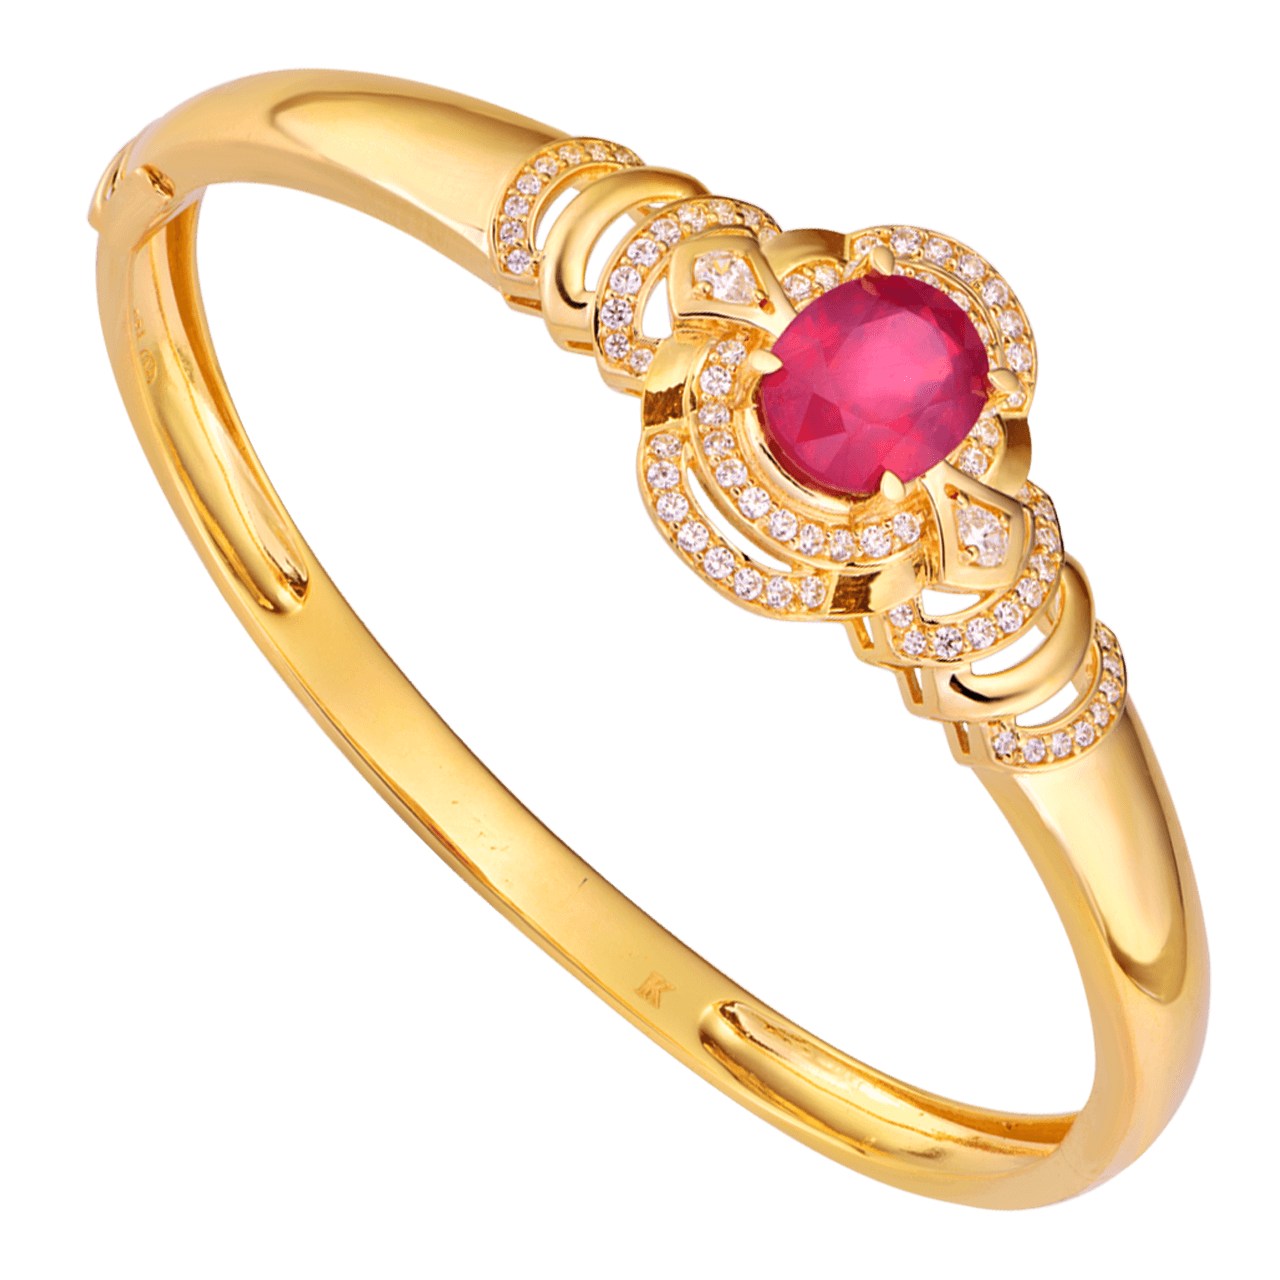 Vòng tay vàng 18K đính đá Ruby PNJ RBXMY000178 là món trang sức đắt giá, quý phái và đầy tinh tế. Mang vòng tay này sẽ tô điểm thêm cho vẻ đẹp của bạn. Ghé trangdoan.vn để sở hữu sản phẩm này.